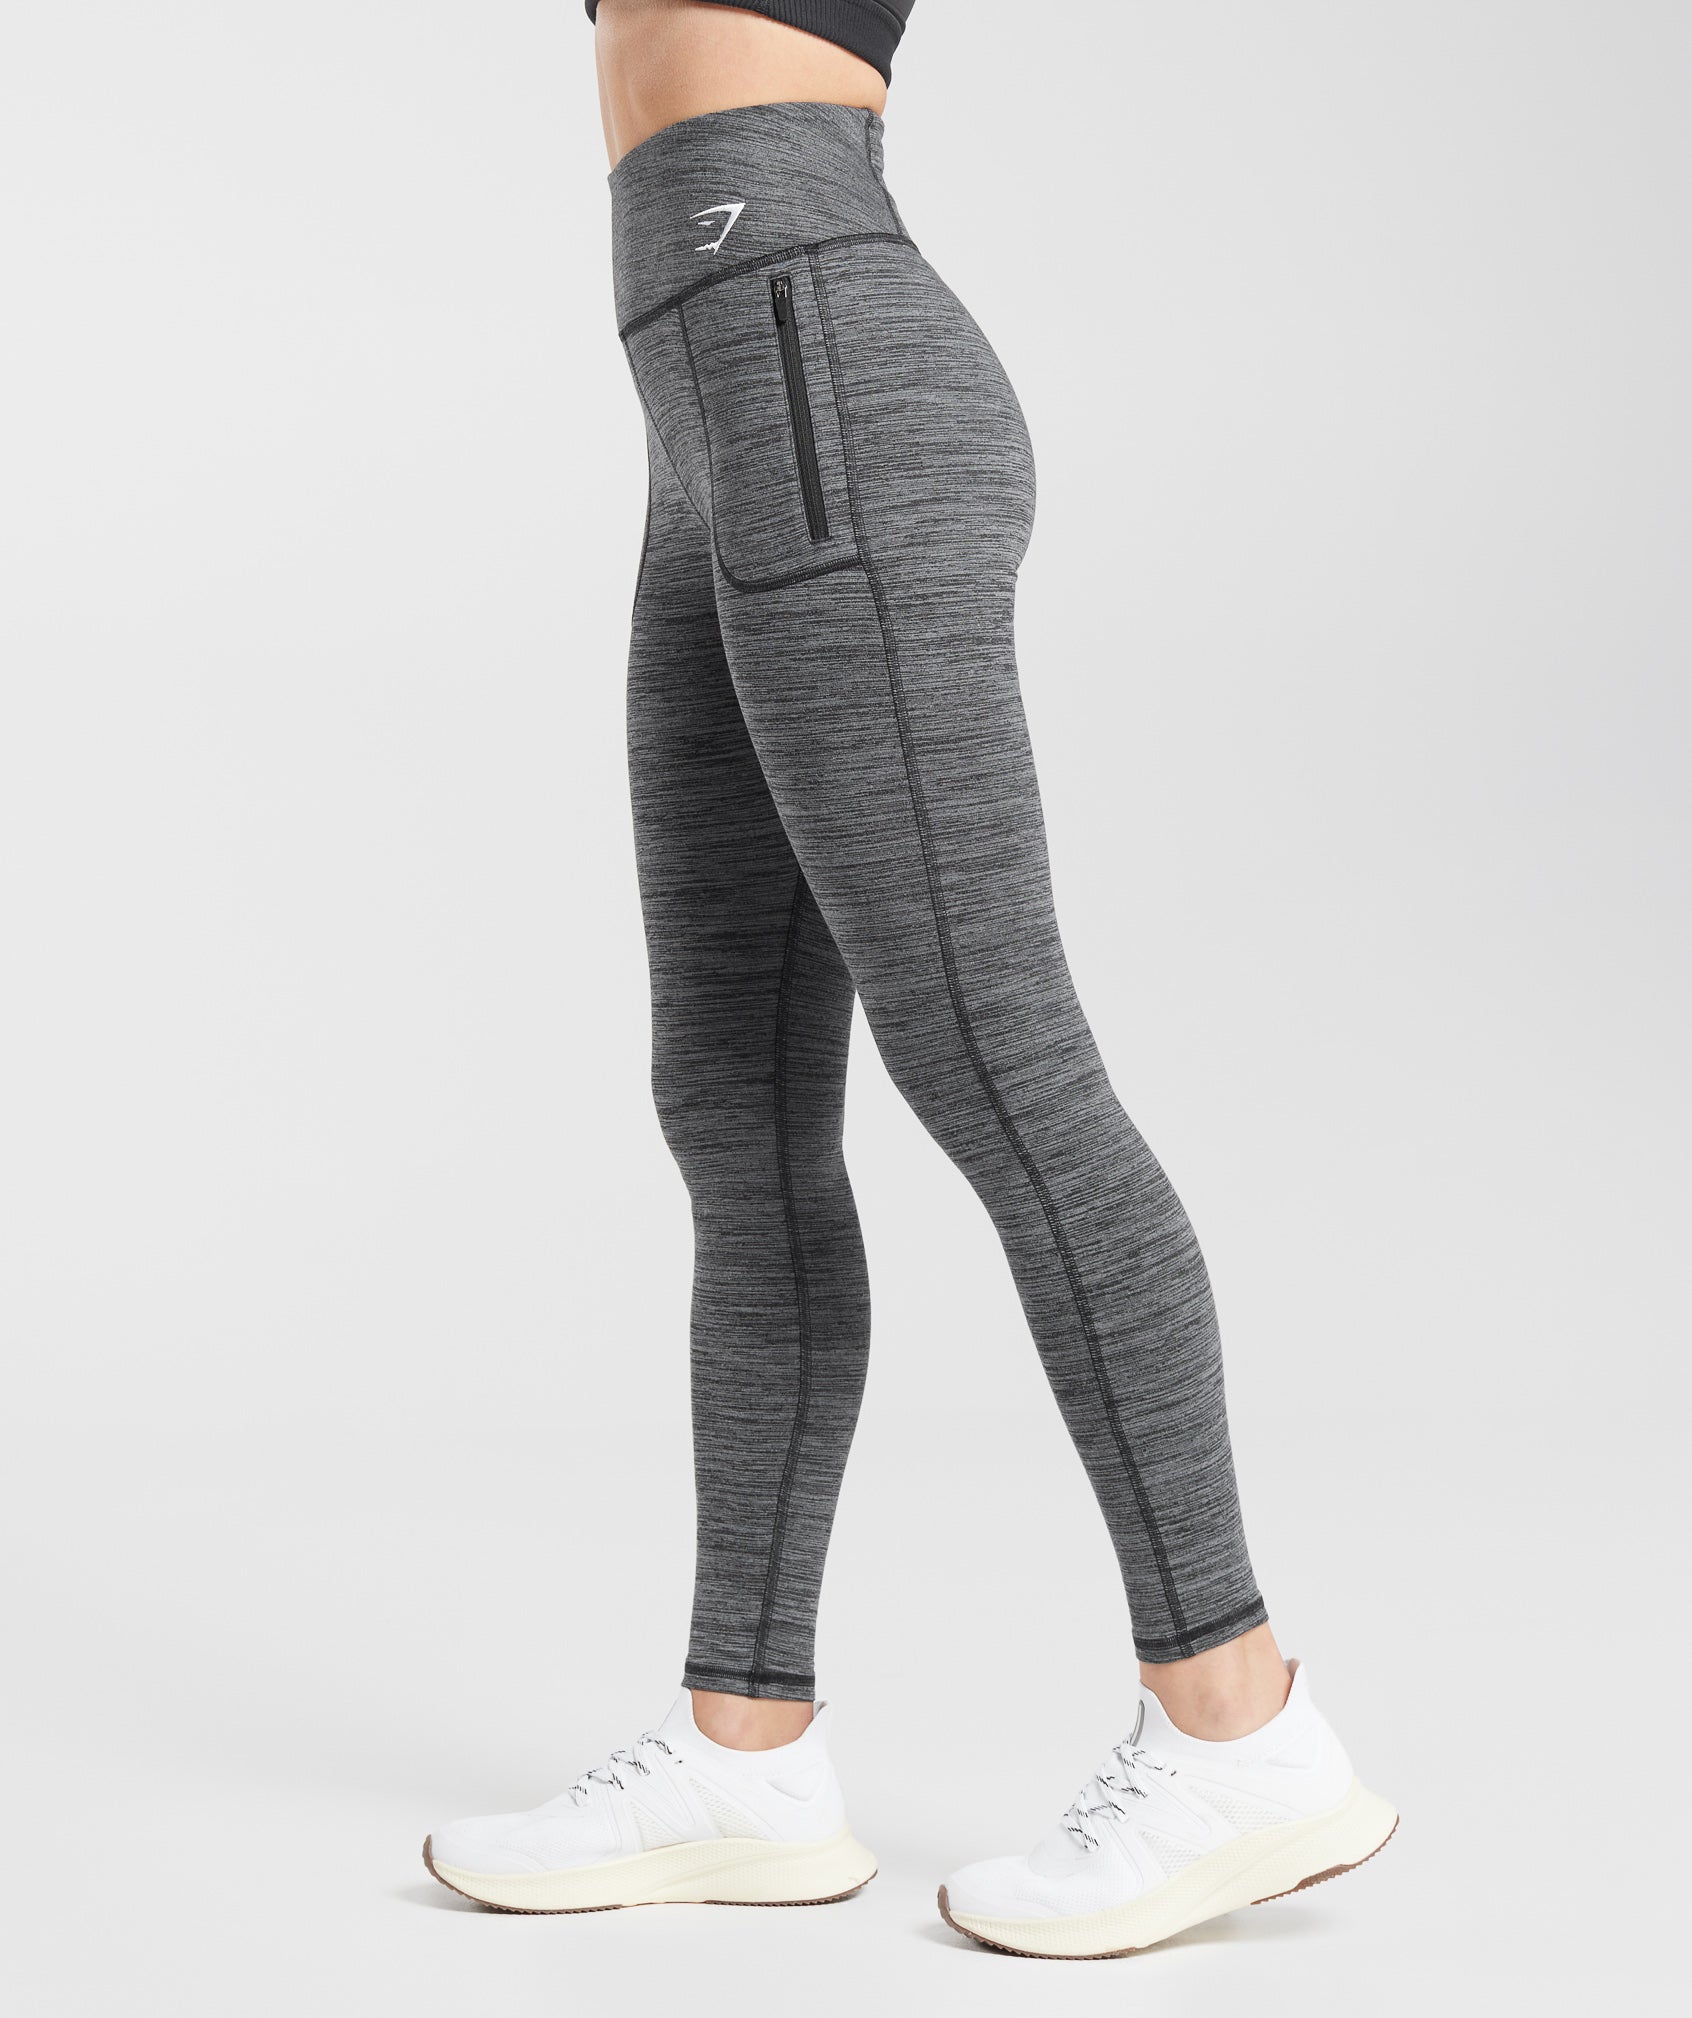 Gymshark Fleece Lined Pocket Leggings - Black/Pitch Grey